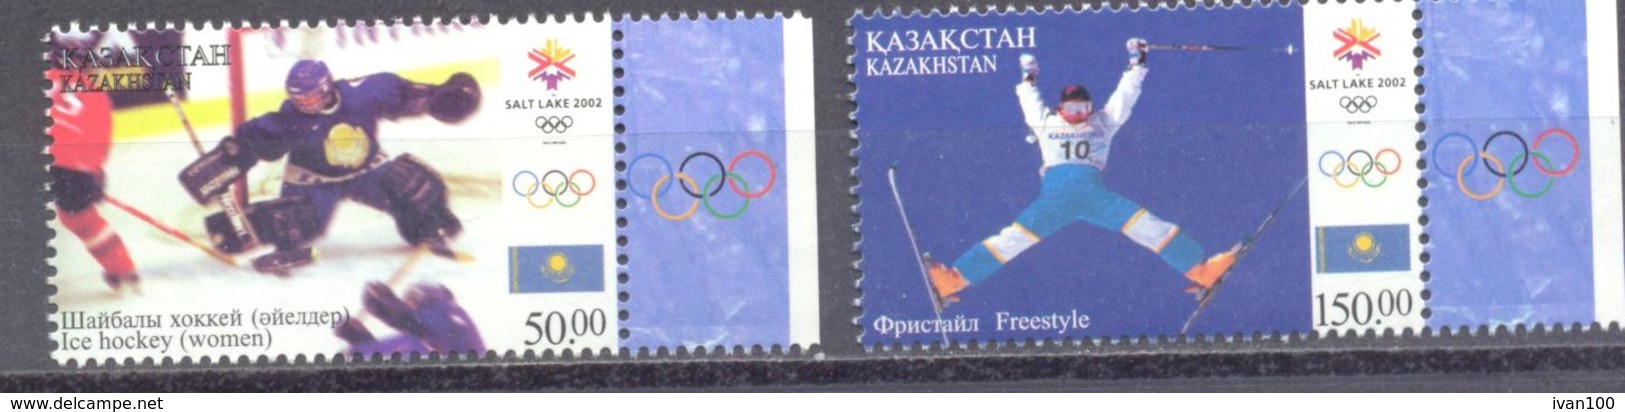 2002. Kazakhstan, Winter Olympic Games Salt Lake City, 2v,  Mint/** - Kasachstan